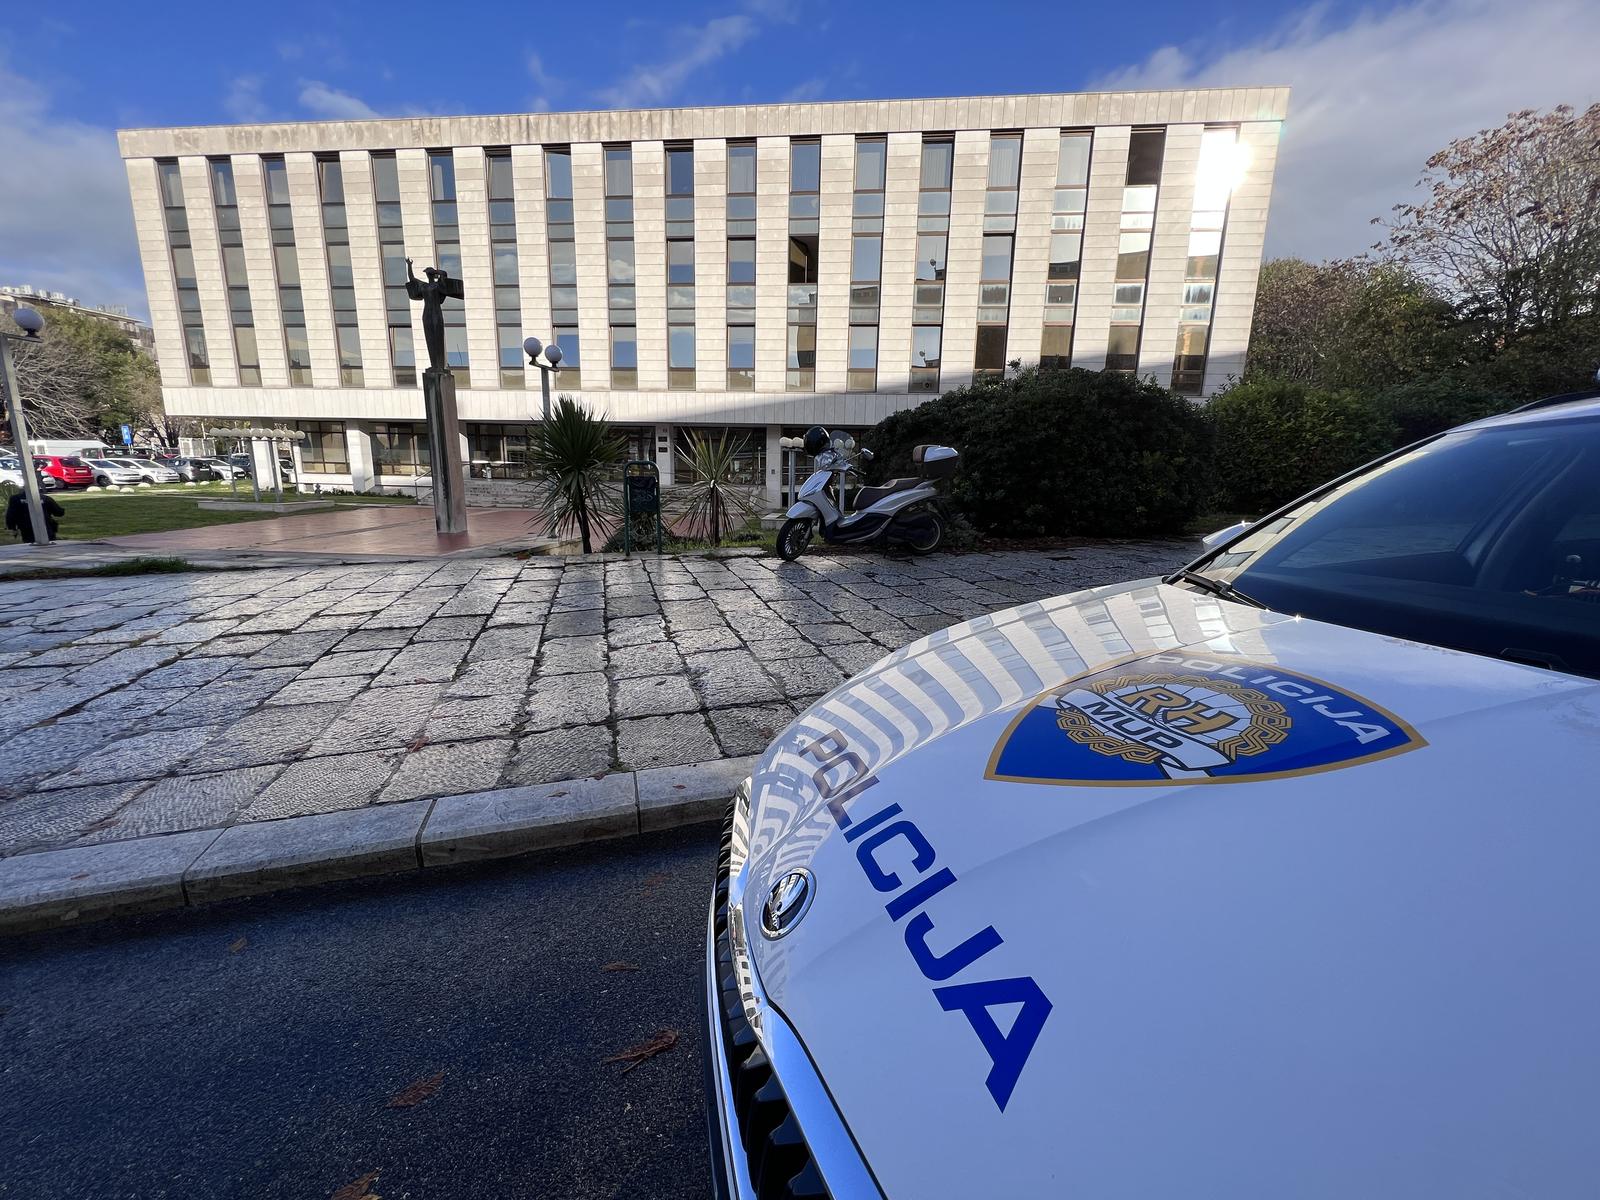 12.05.2022., Split - Zupanijski sud u Splitu dobio je dojavu o postavljenoj eksplozivnoj napravi zbog cega se trenutno provodi evakuacija zaposlenika. Photo: Ivo Cagalj/PIXSELL